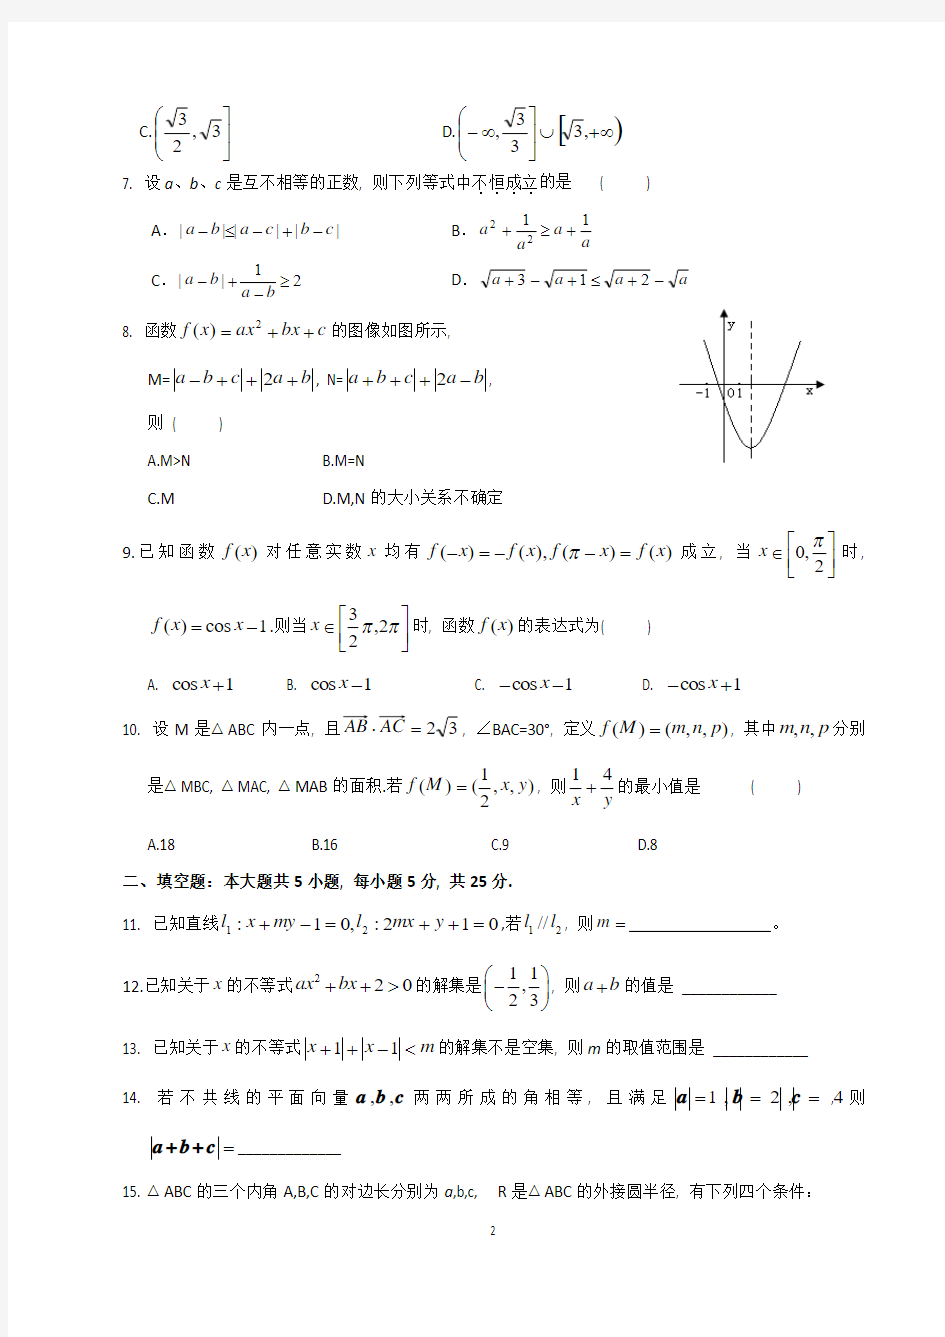 武汉二中高一年级下学期期末考试数学试卷(理科)及答案